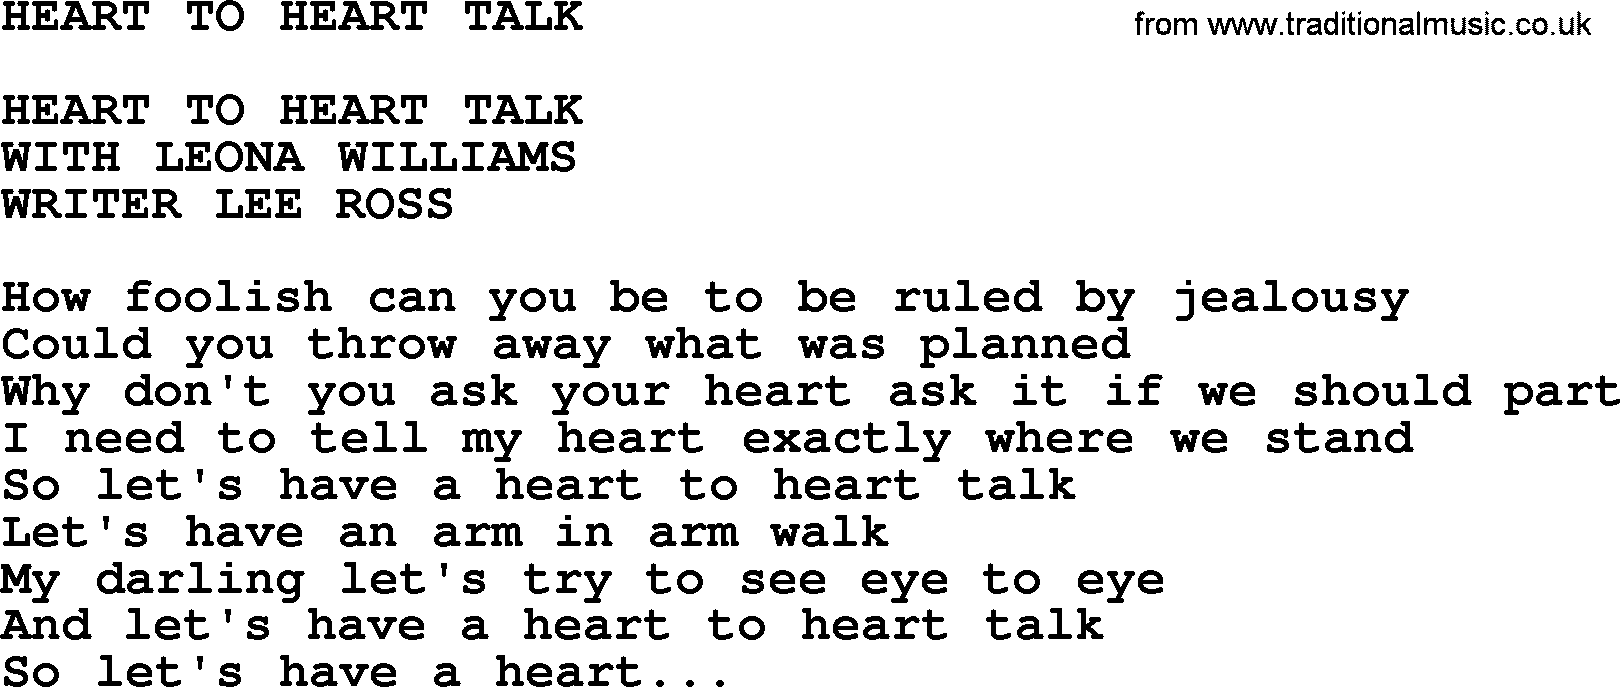 Merle Haggard song: Heart To Heart Talk, lyrics.